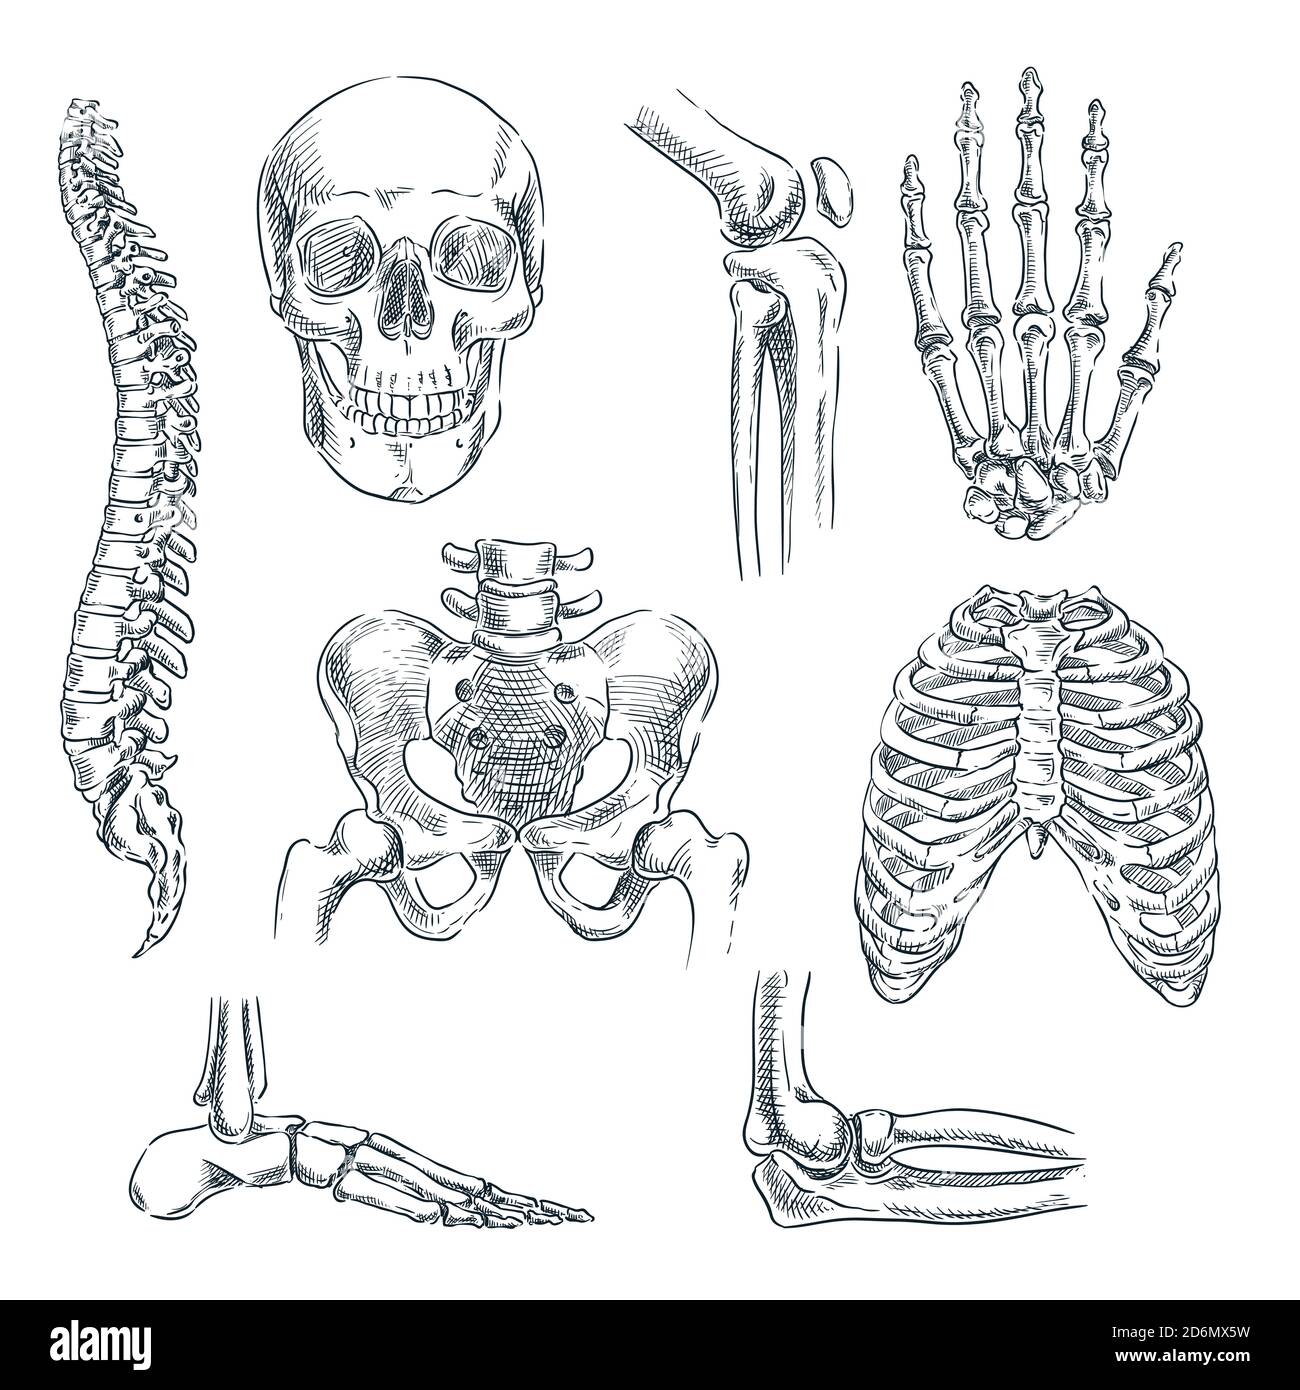 Menschliches Skelett, Knochen und Gelenke. Vektorskizze isolierte Illustration. Handgezeichnete Doodle Anatomie Symbole gesetzt. Stock Vektor